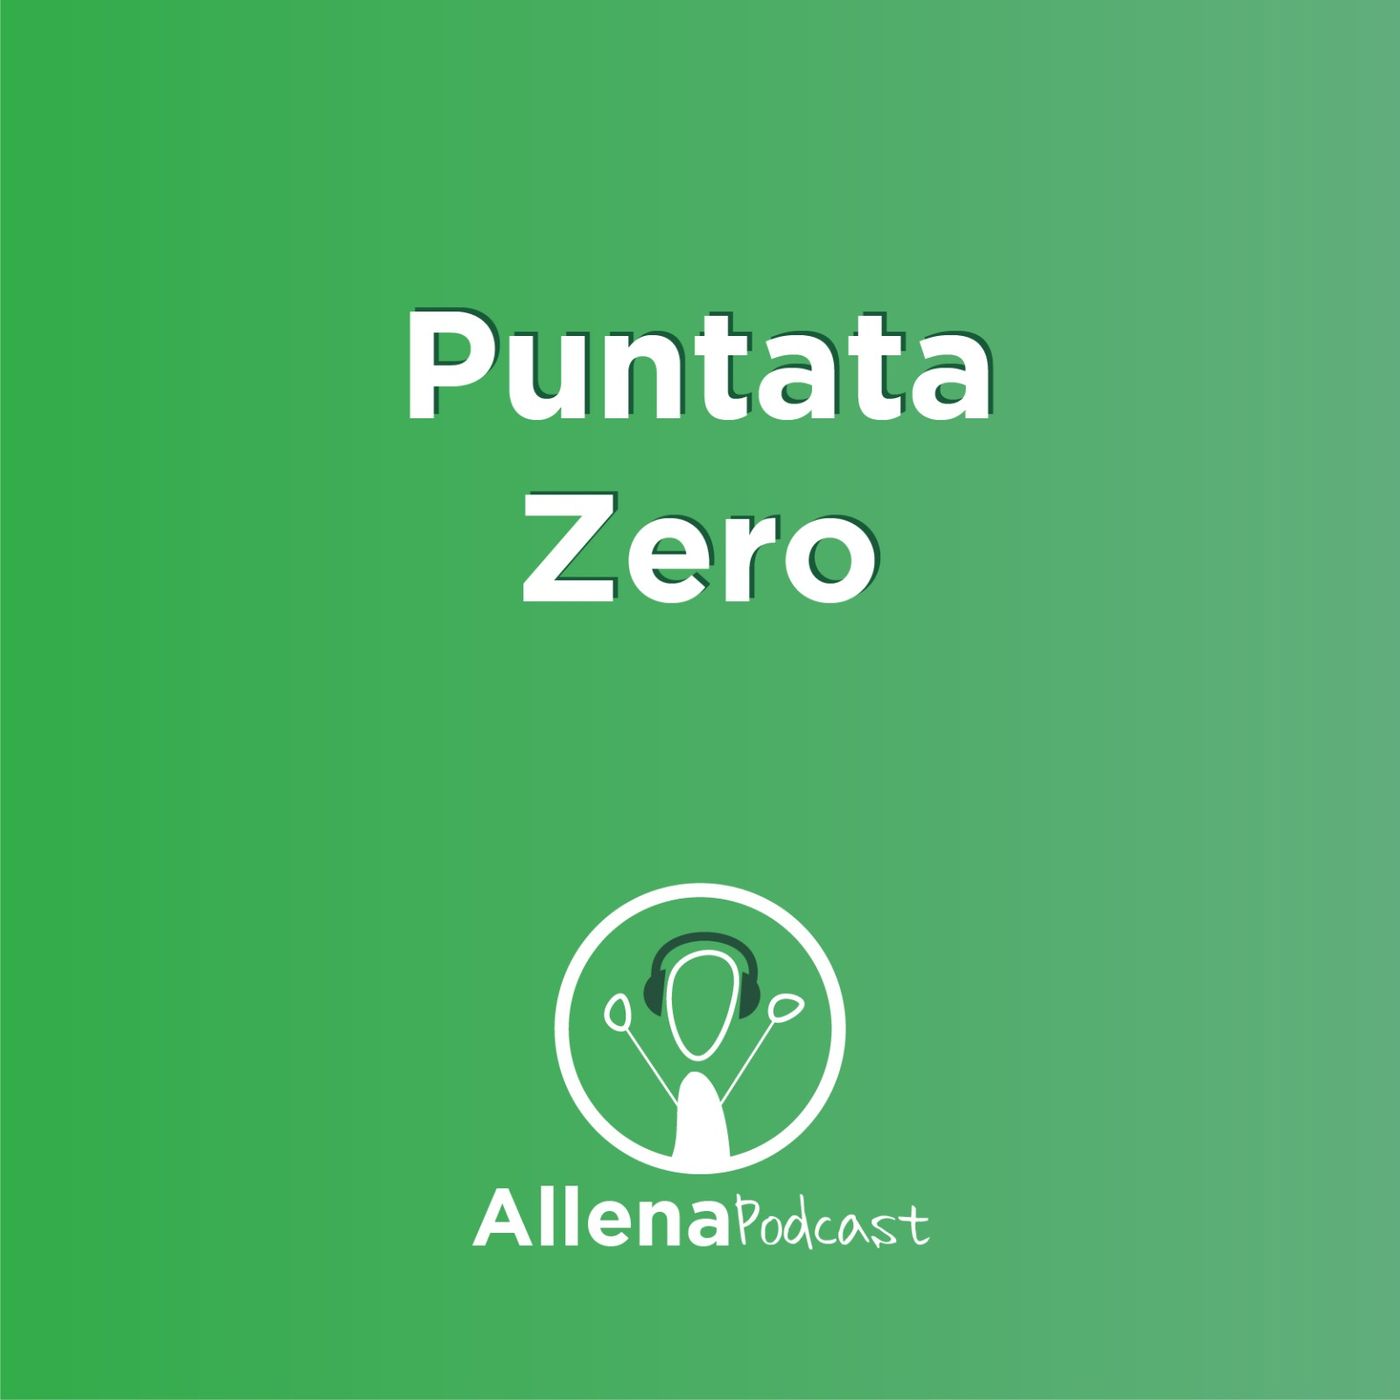 AllenaPodcast Puntata 0